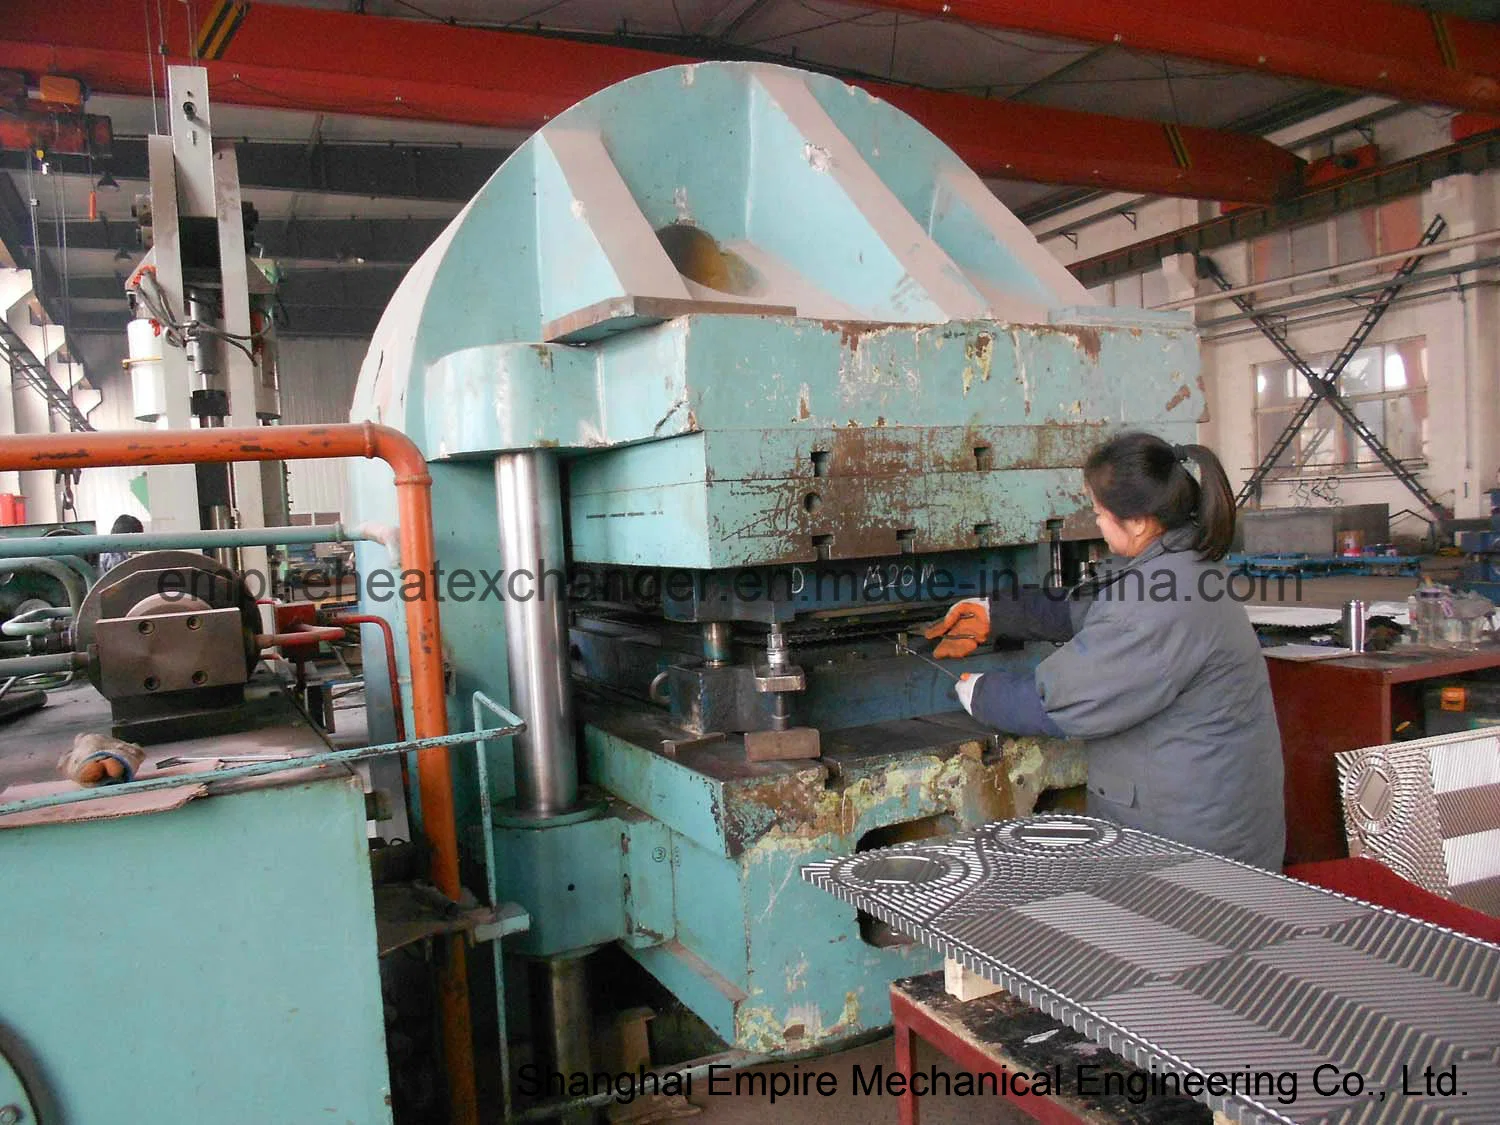 16000t Presse hydraulique, Ligne de production d'échangeur de chaleur, Presse de fabrication de plaques d'échangeur de chaleur.